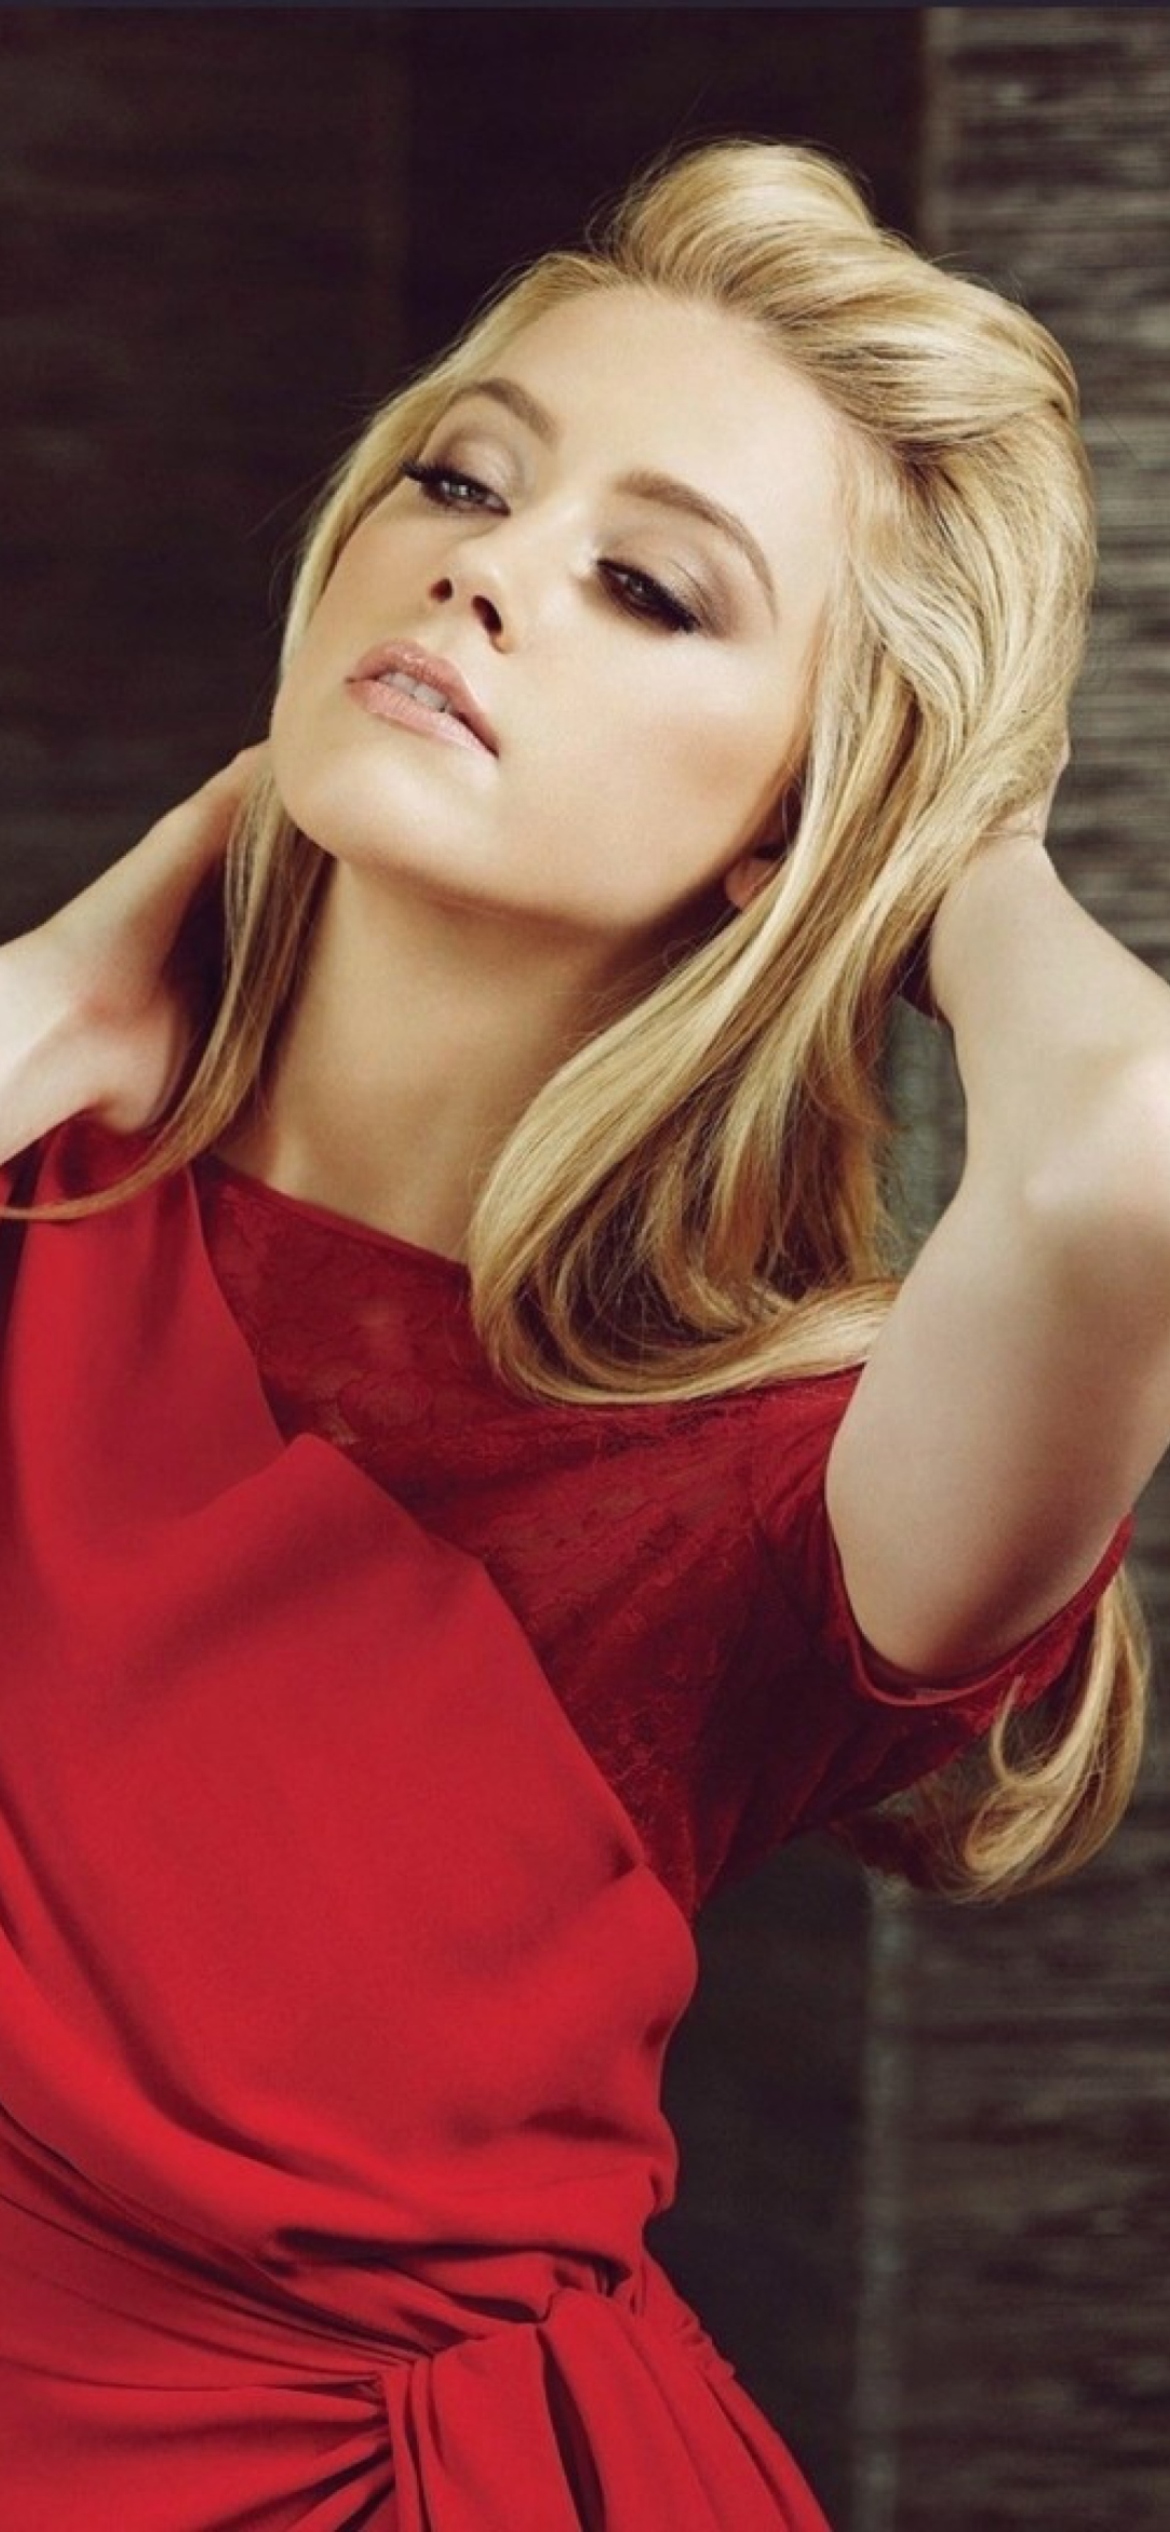 Blonde Model In Red Dress wallpaper 1170x2532